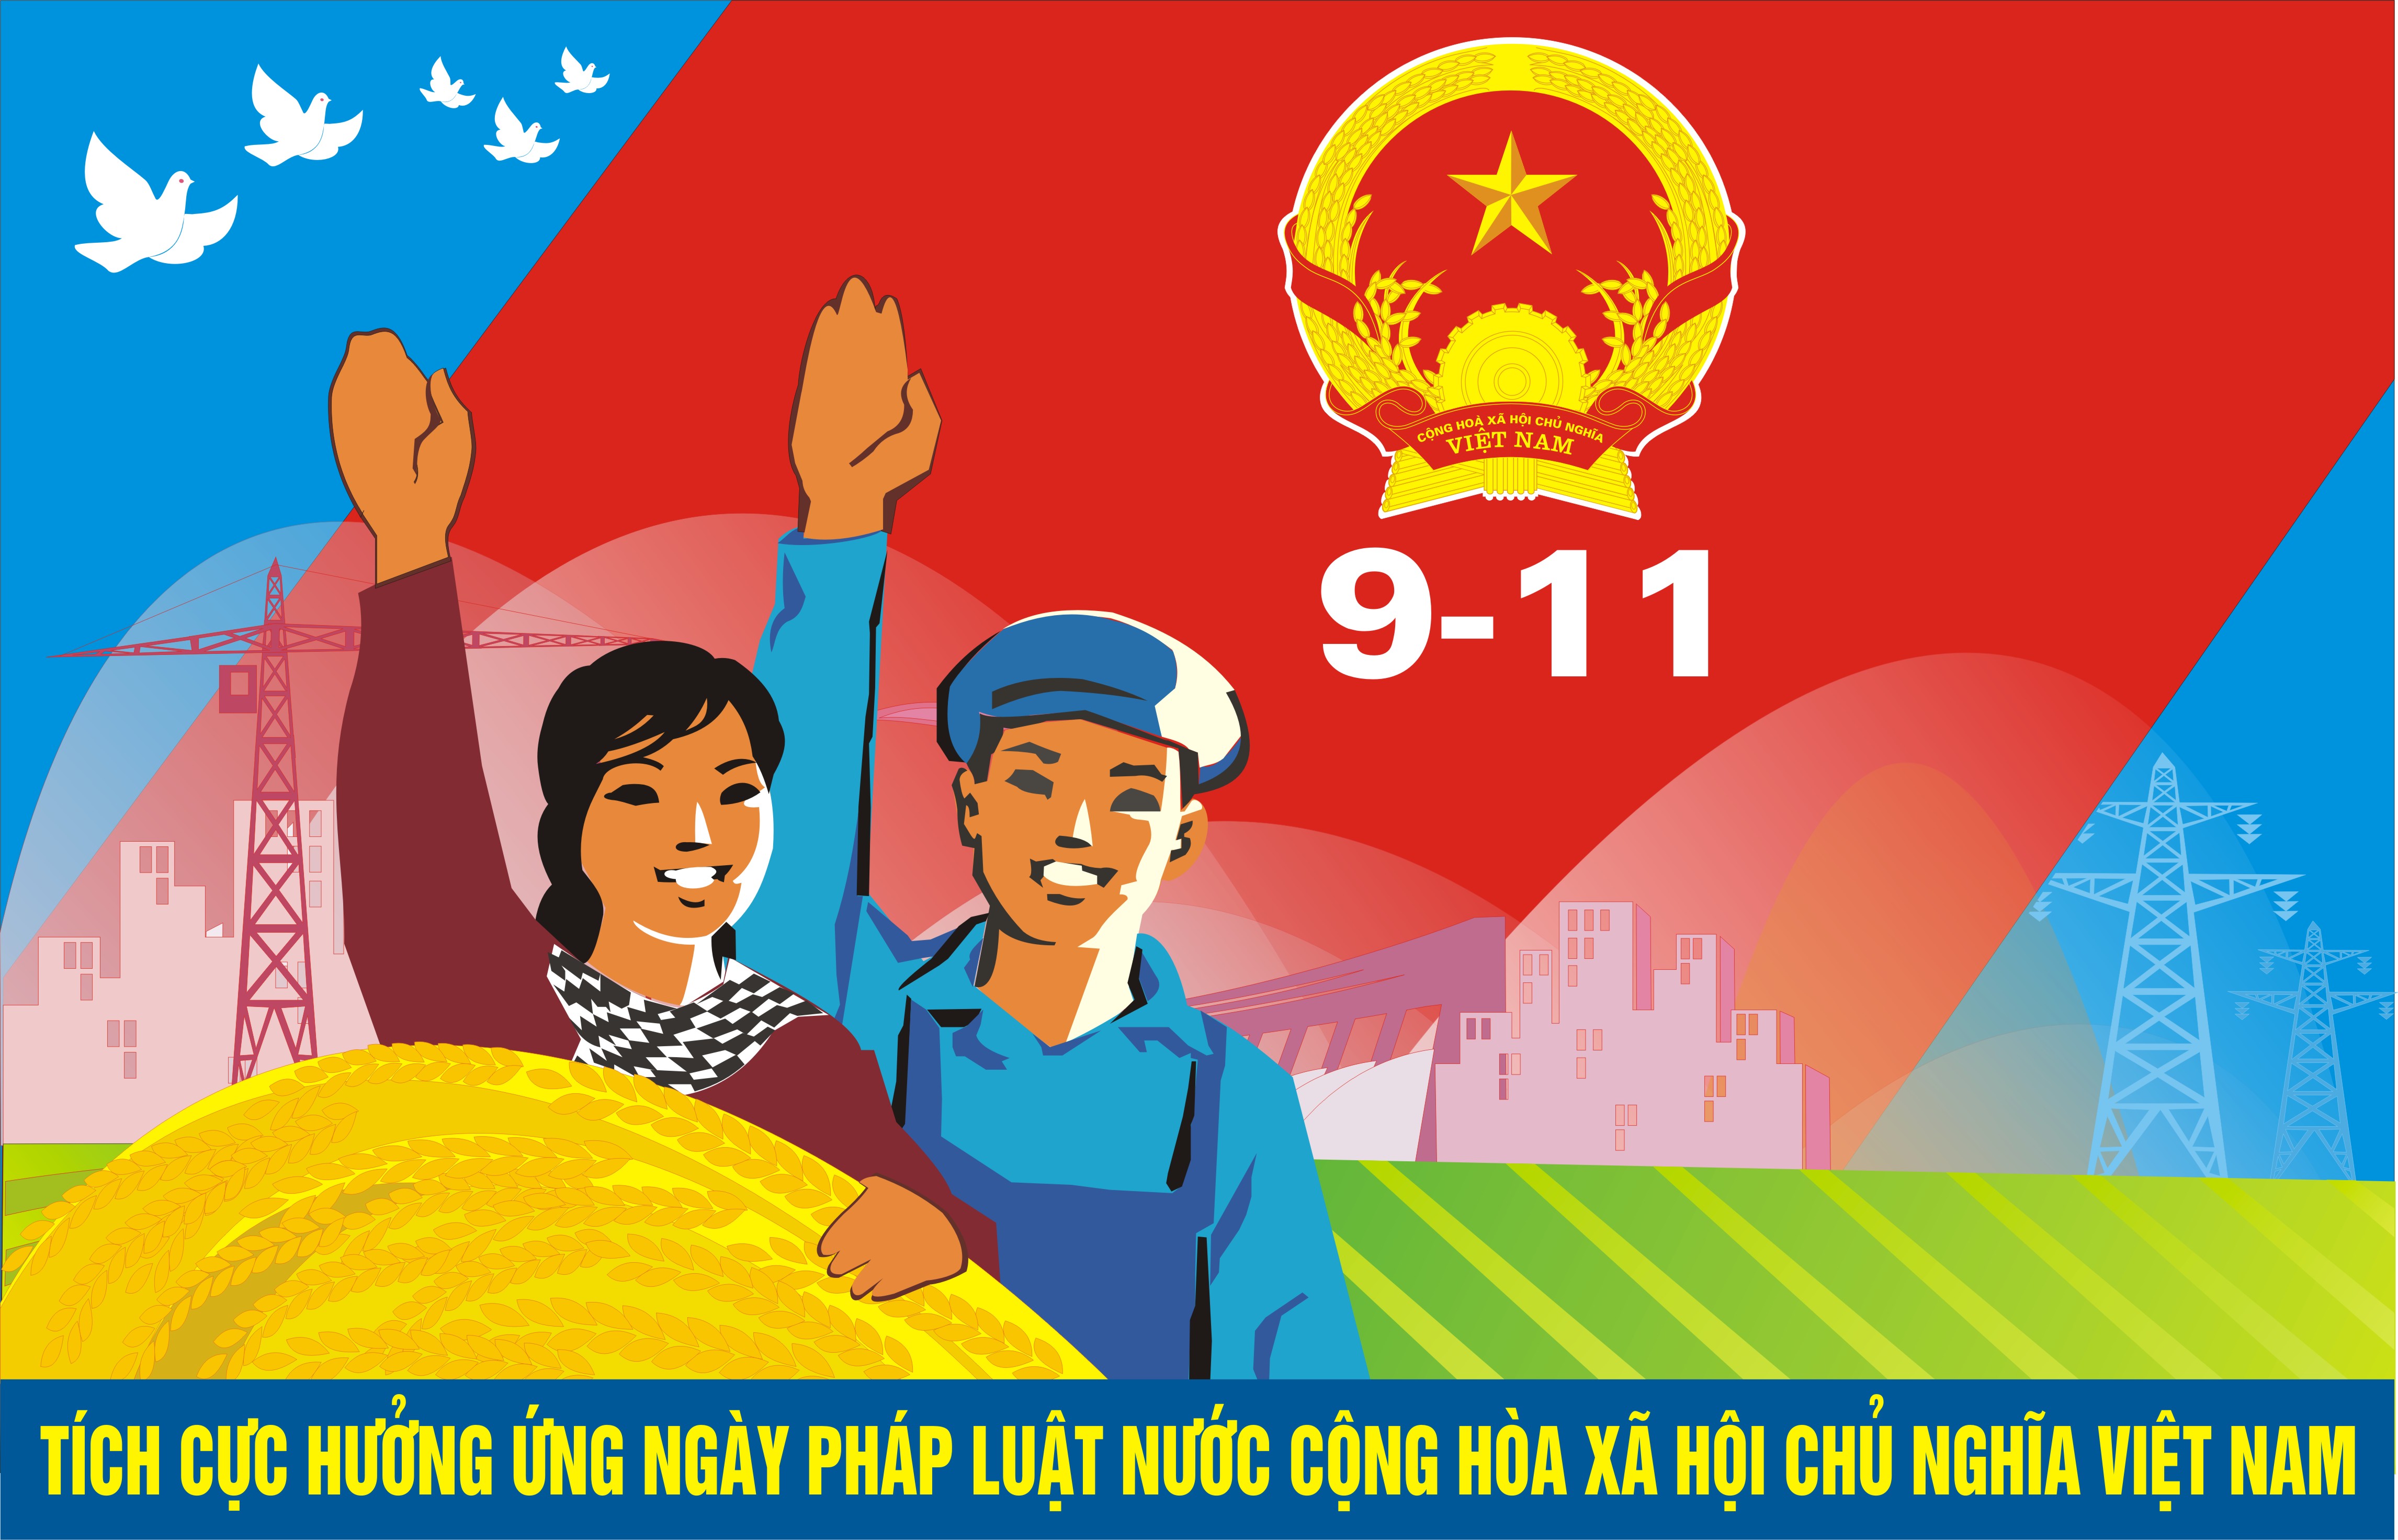 Ngày Pháp luật Việt Nam được tổ chức từ năm 2013 (Nguồn ảnh: nternet)